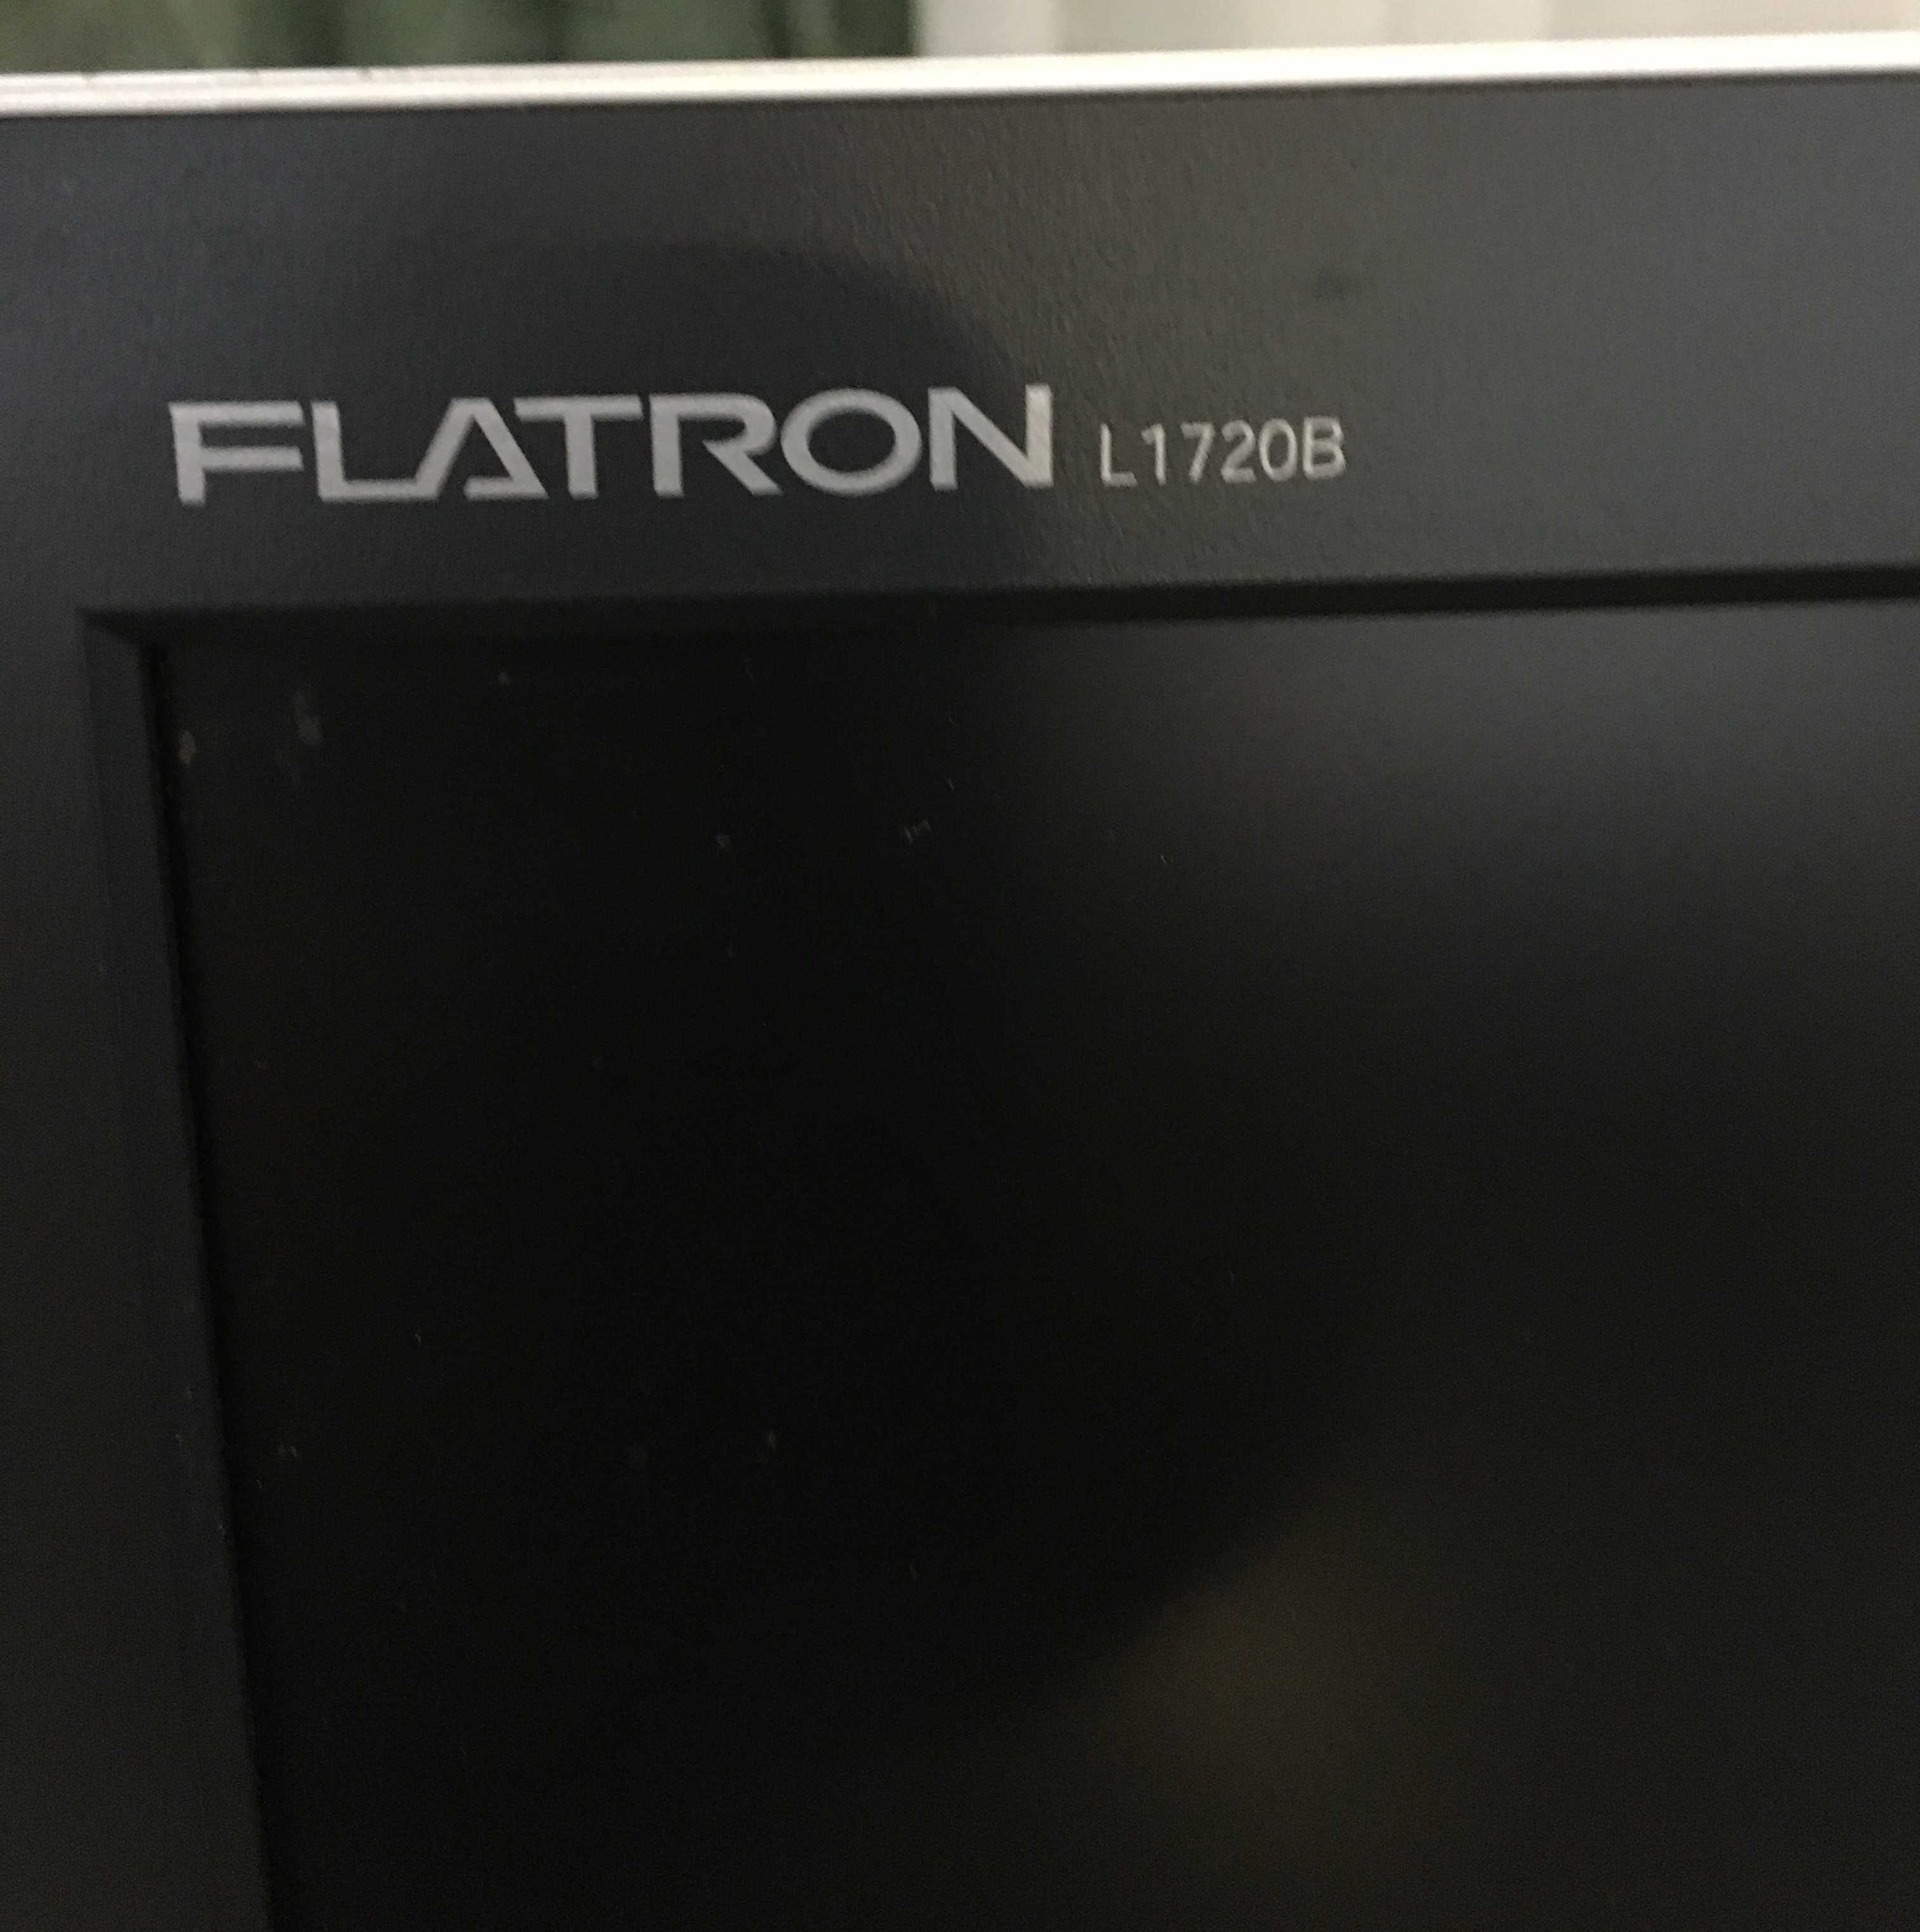 Monitor LG FLATRON L1720B